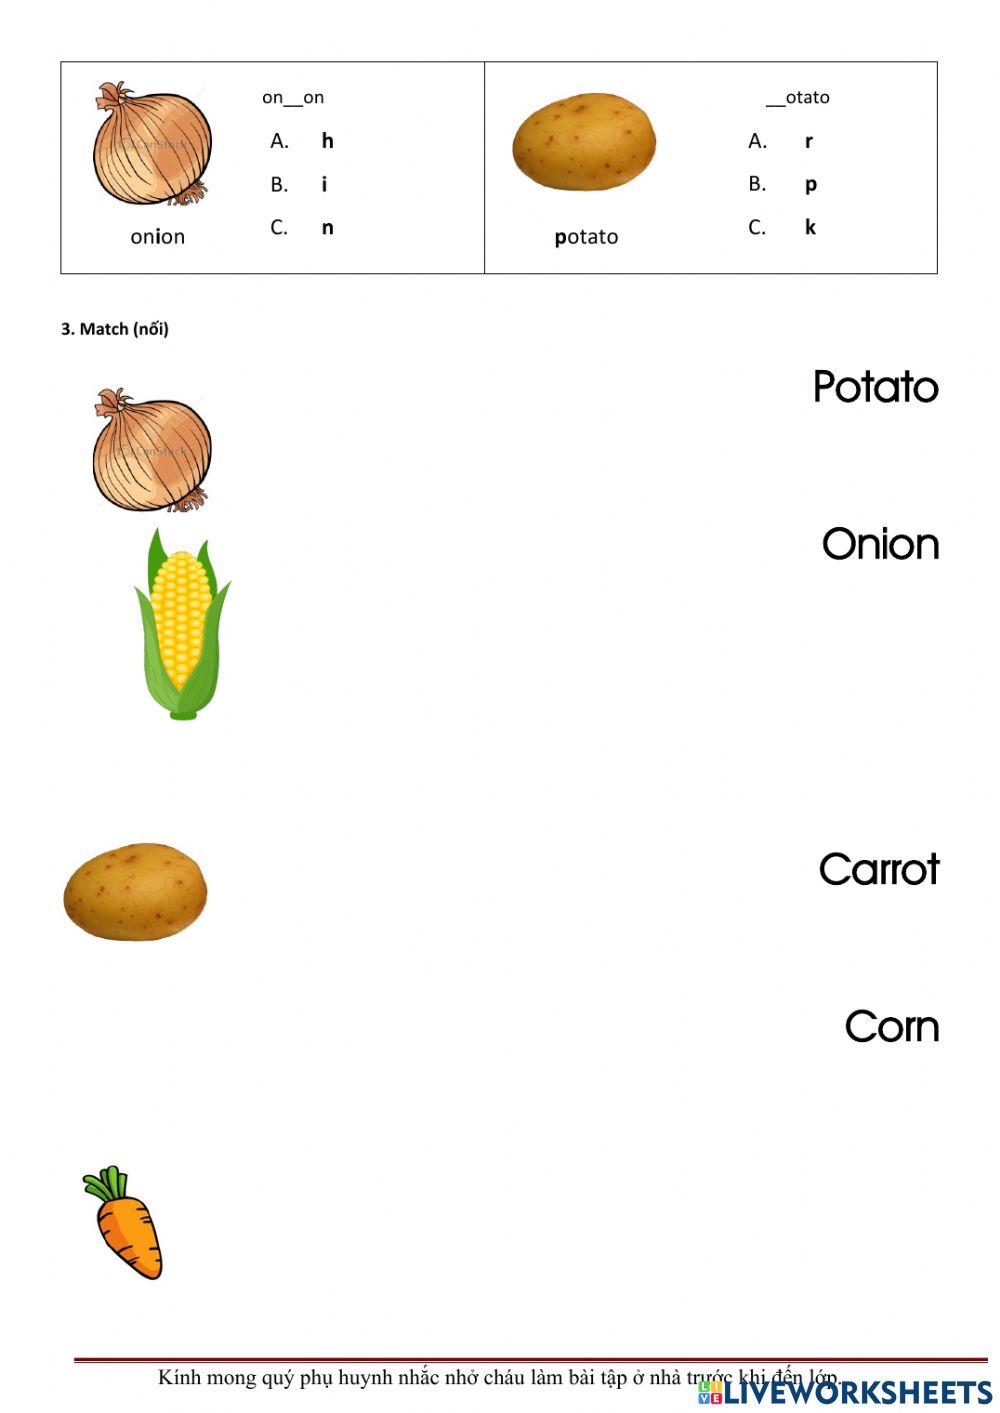 Corn, carrot , potato, onion